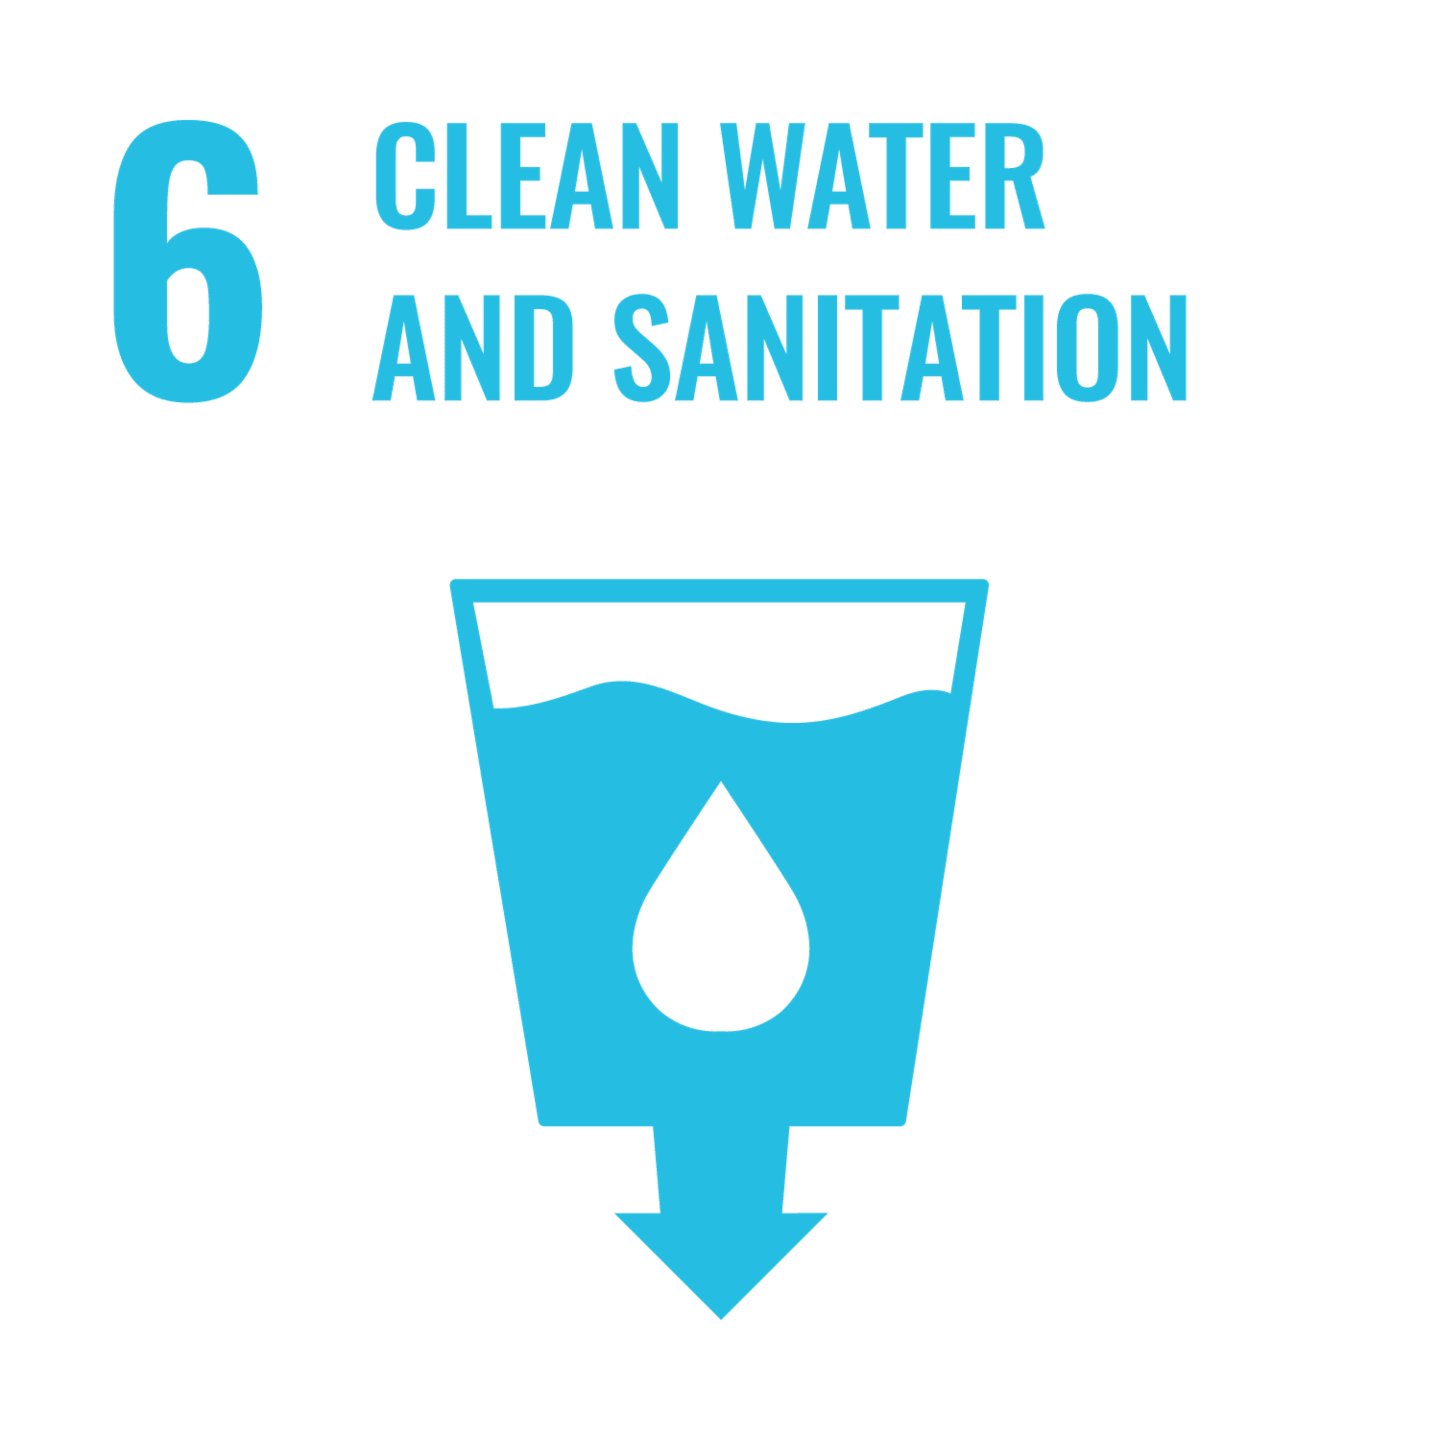 U.N. SDG 6 (Clean Water and Sanitation)